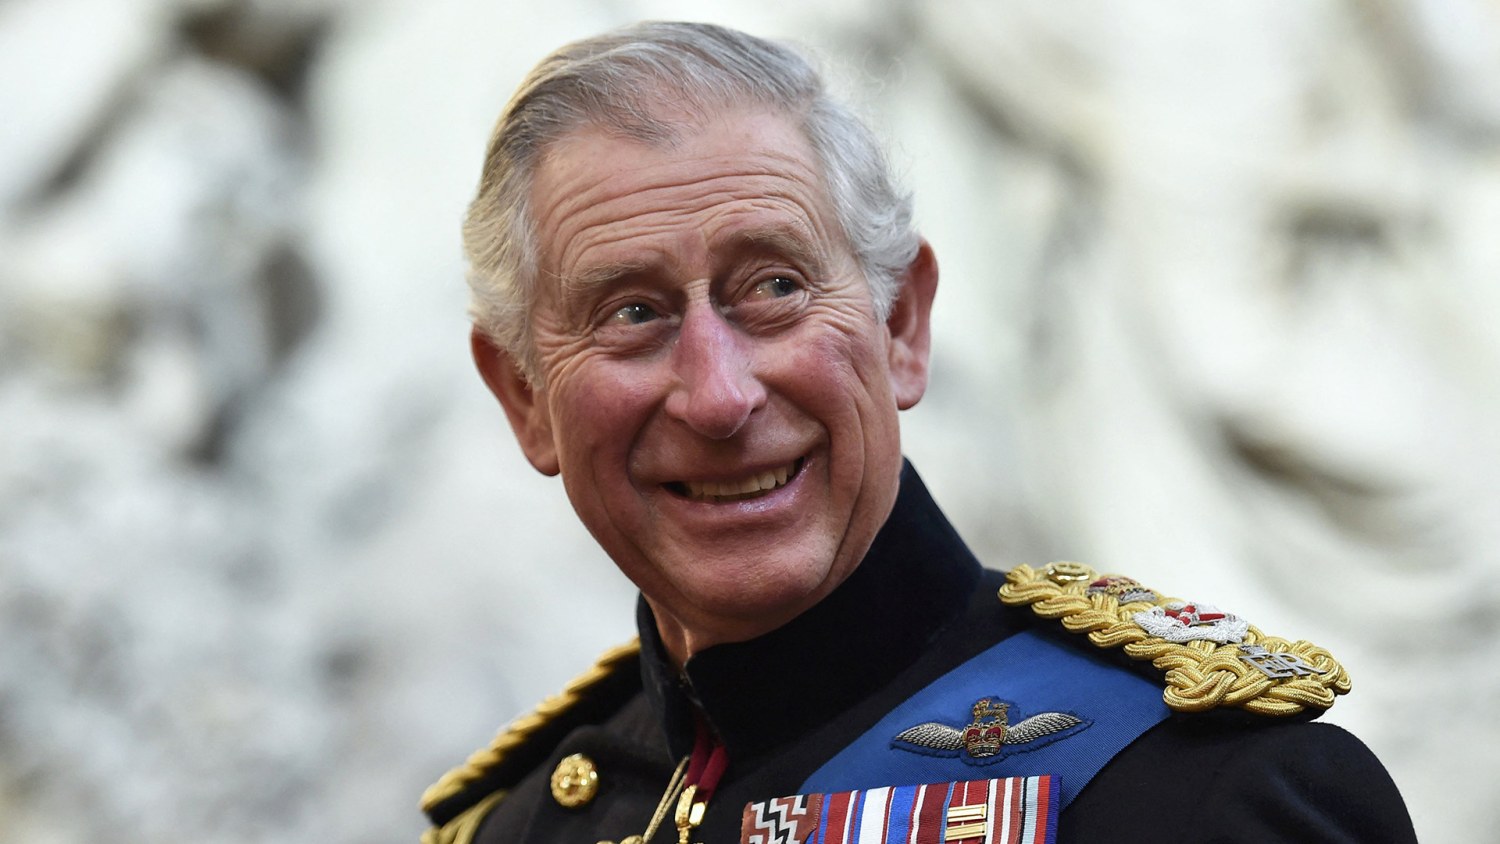 Prince Charles becomes the new King of England